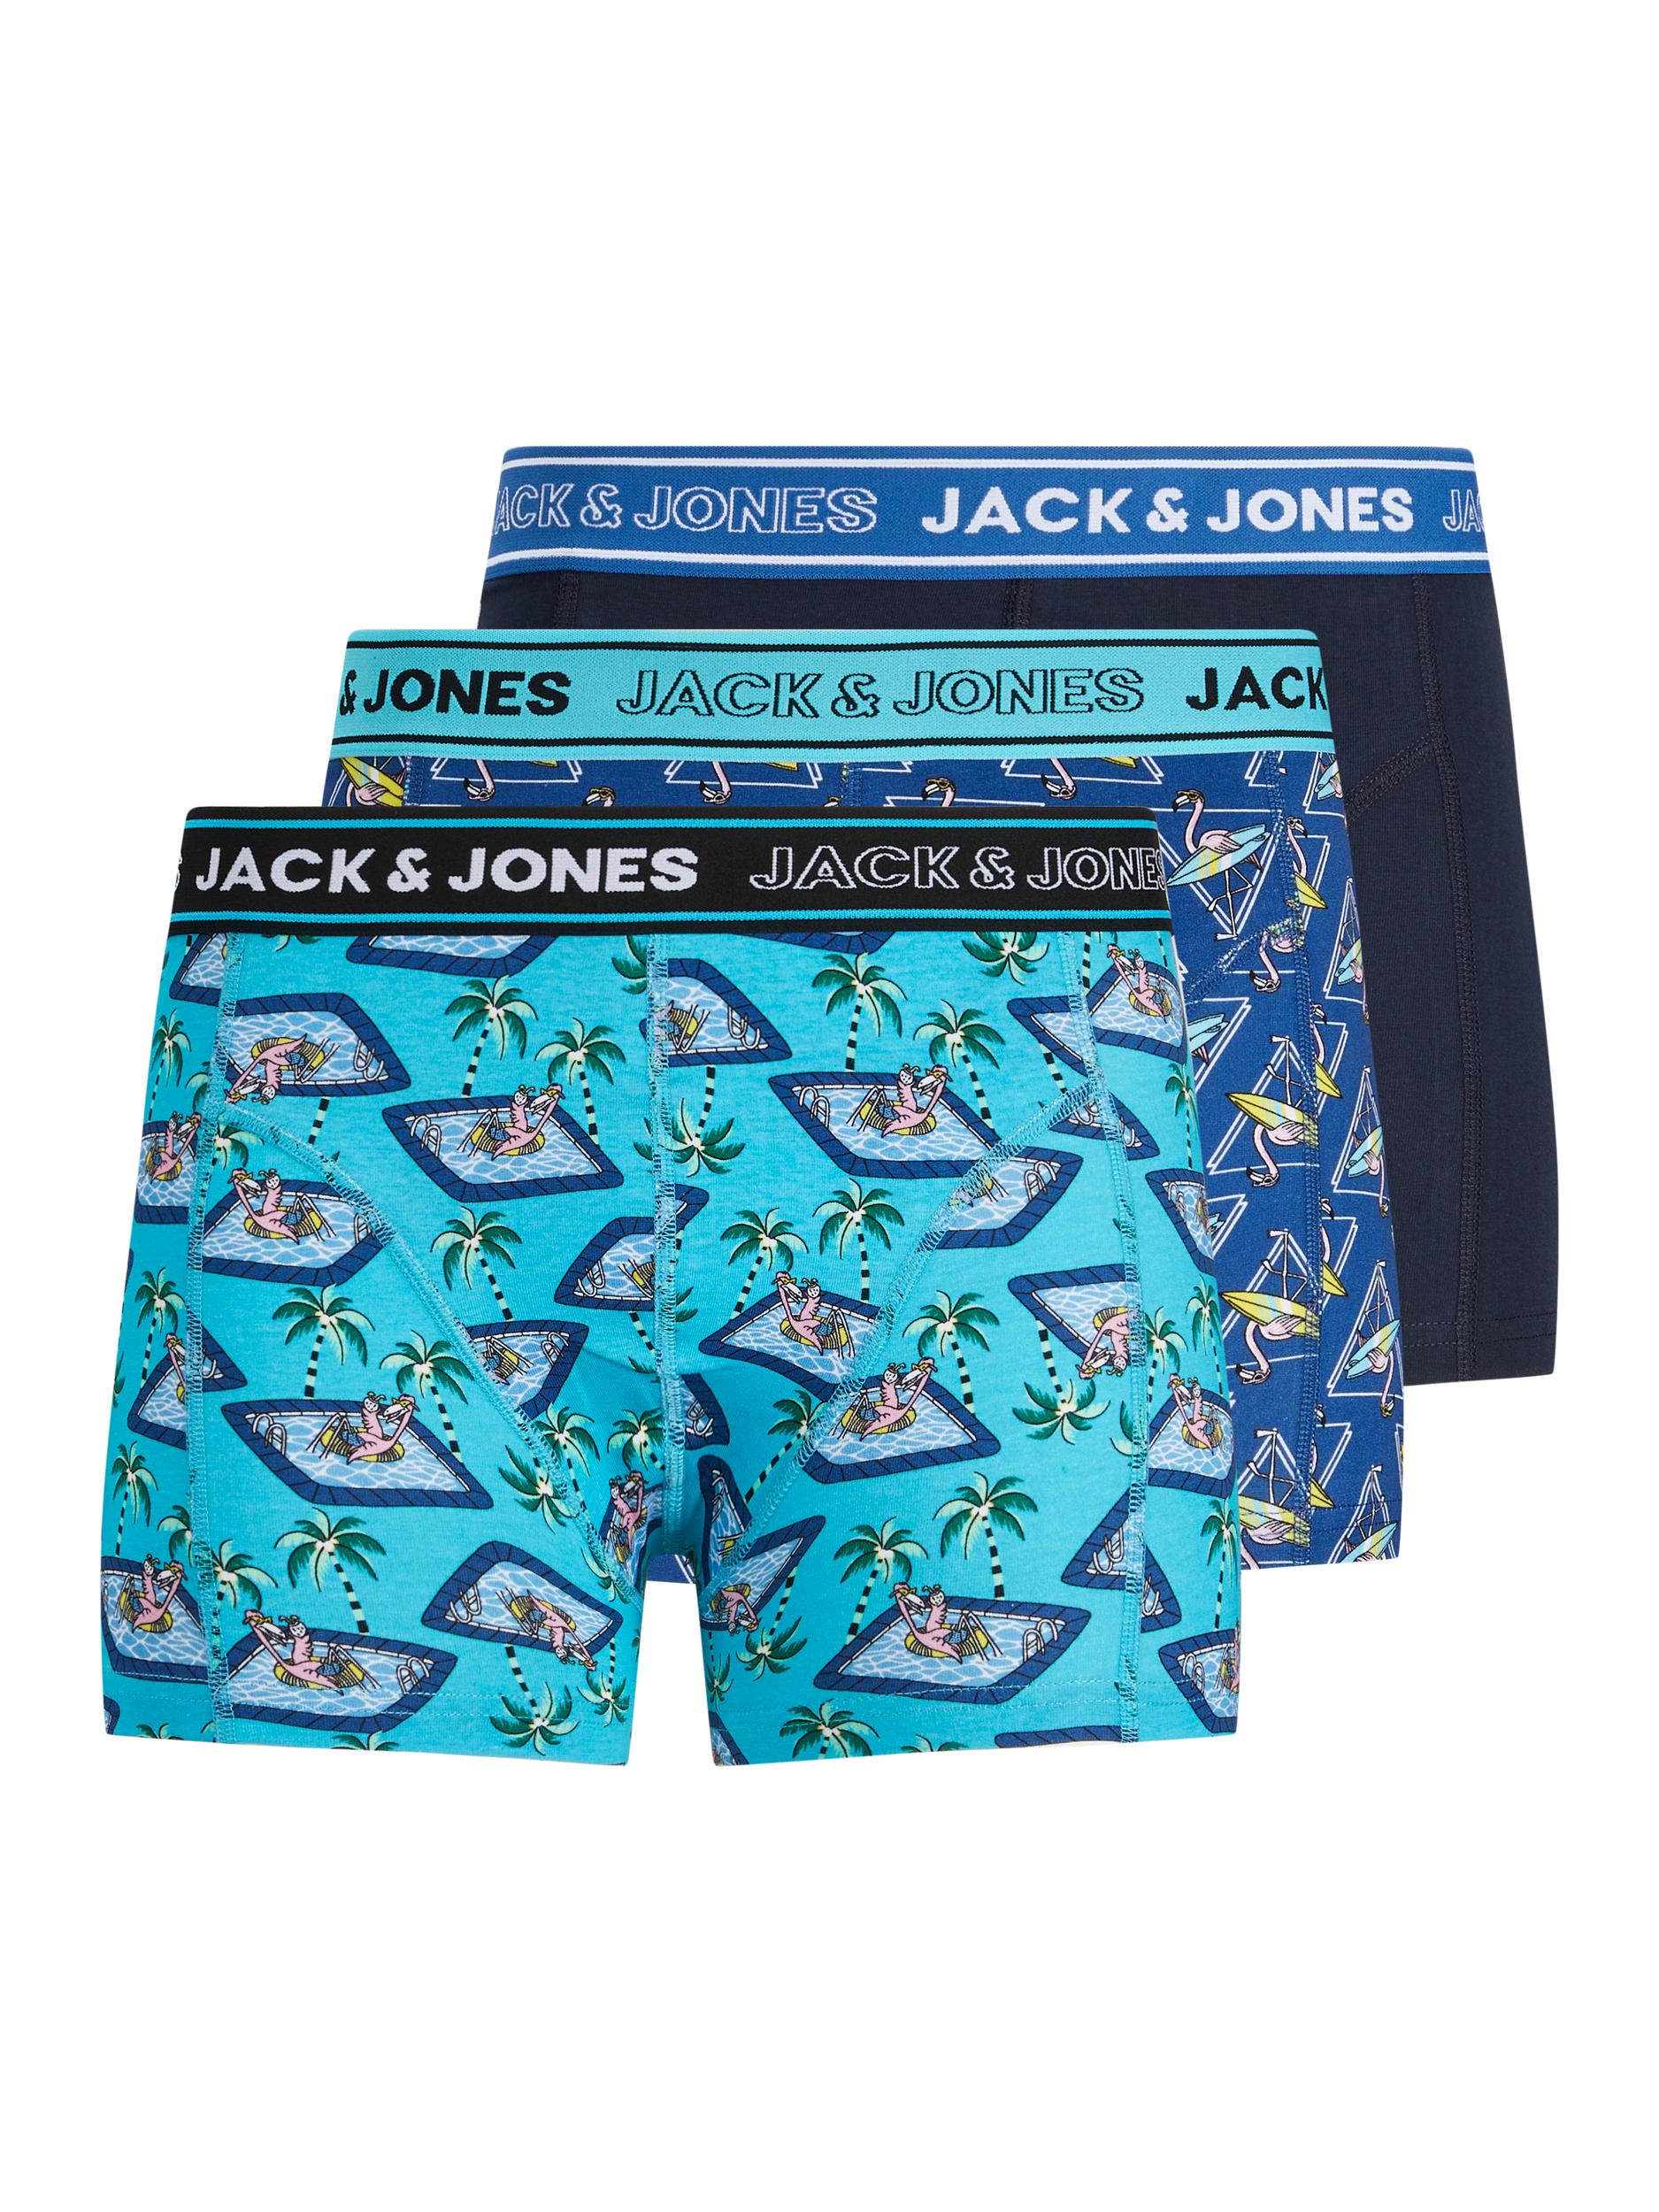 Abbigliamento Intimo JACK & JONES Boxer in Acqua, Marino, Navy 